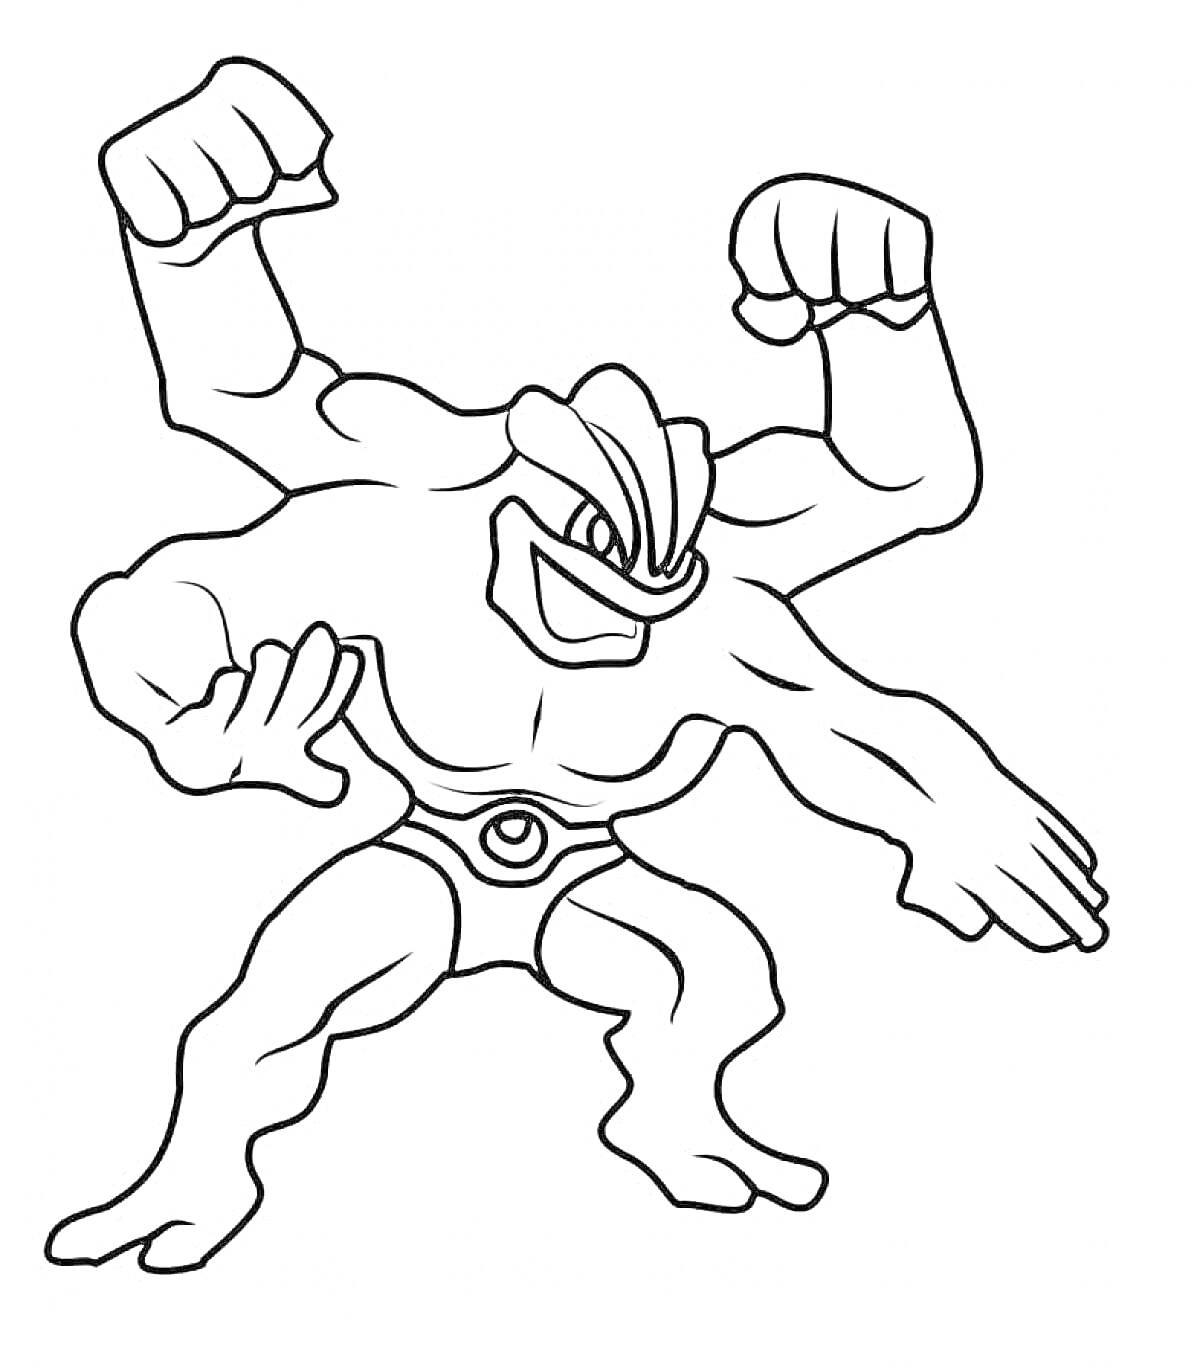 Персонаж с четырьмя руками и поднятыми кулаками из серии Гуджитсу